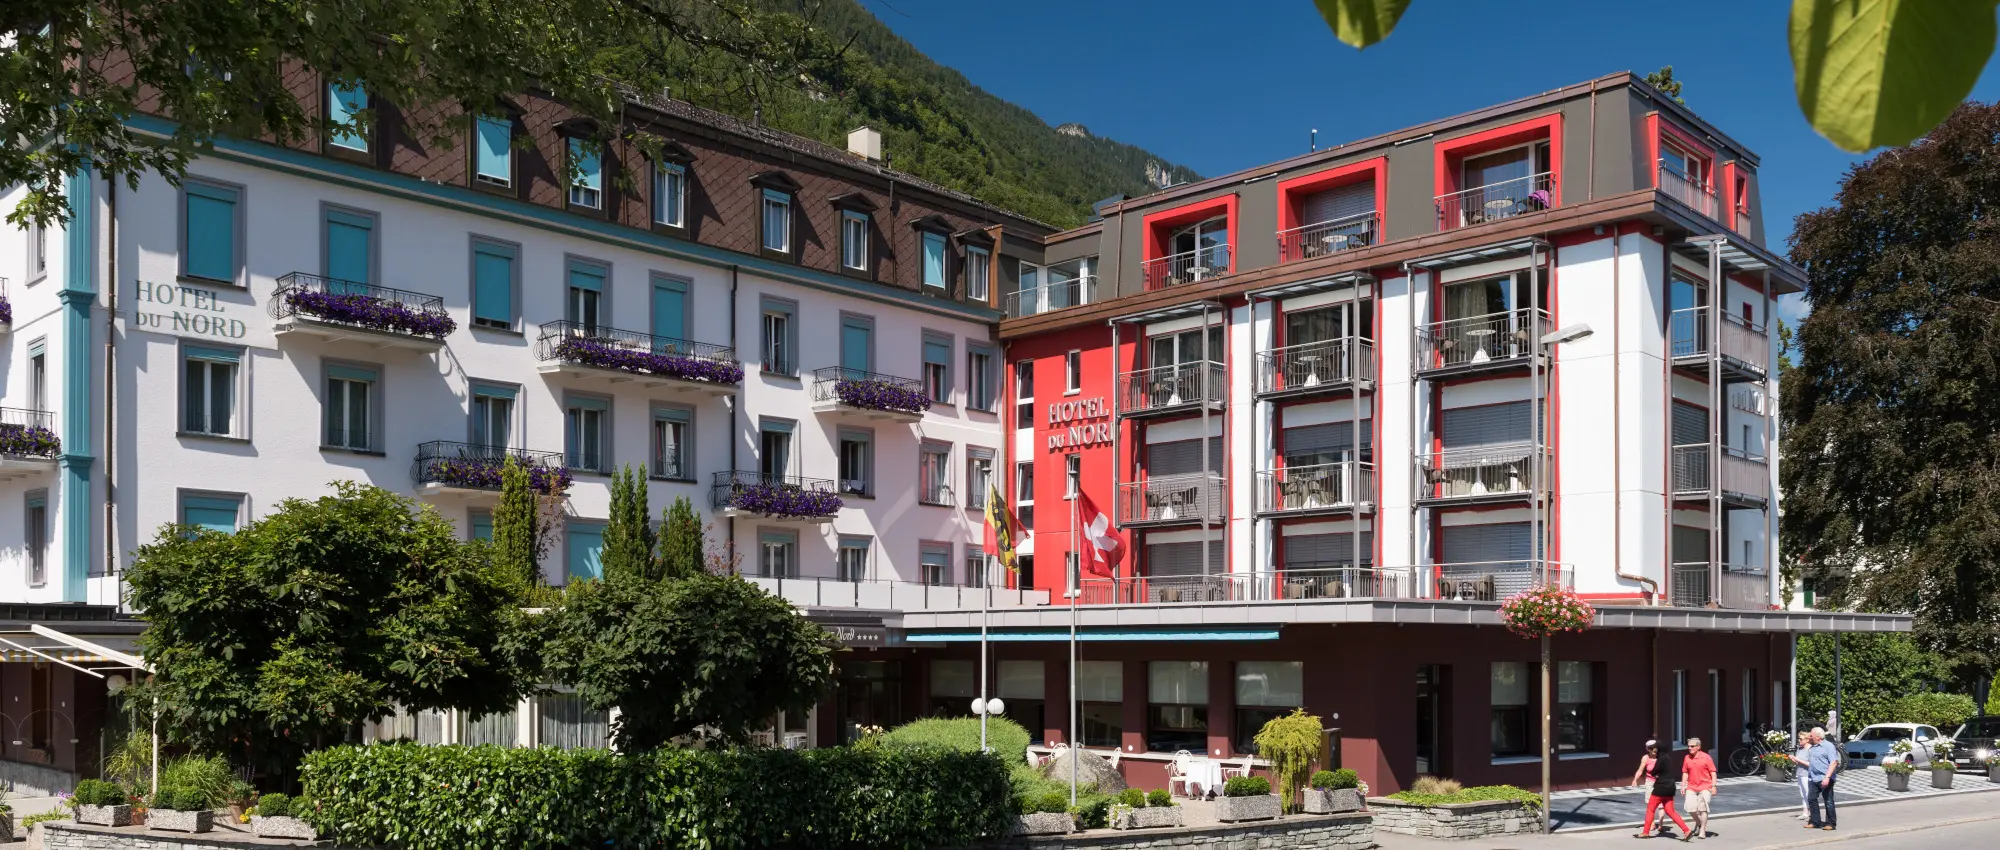 Hotel Du Nord - komfortables Vierstern-Hotel im Zentrum von Interlaken,Schweiz